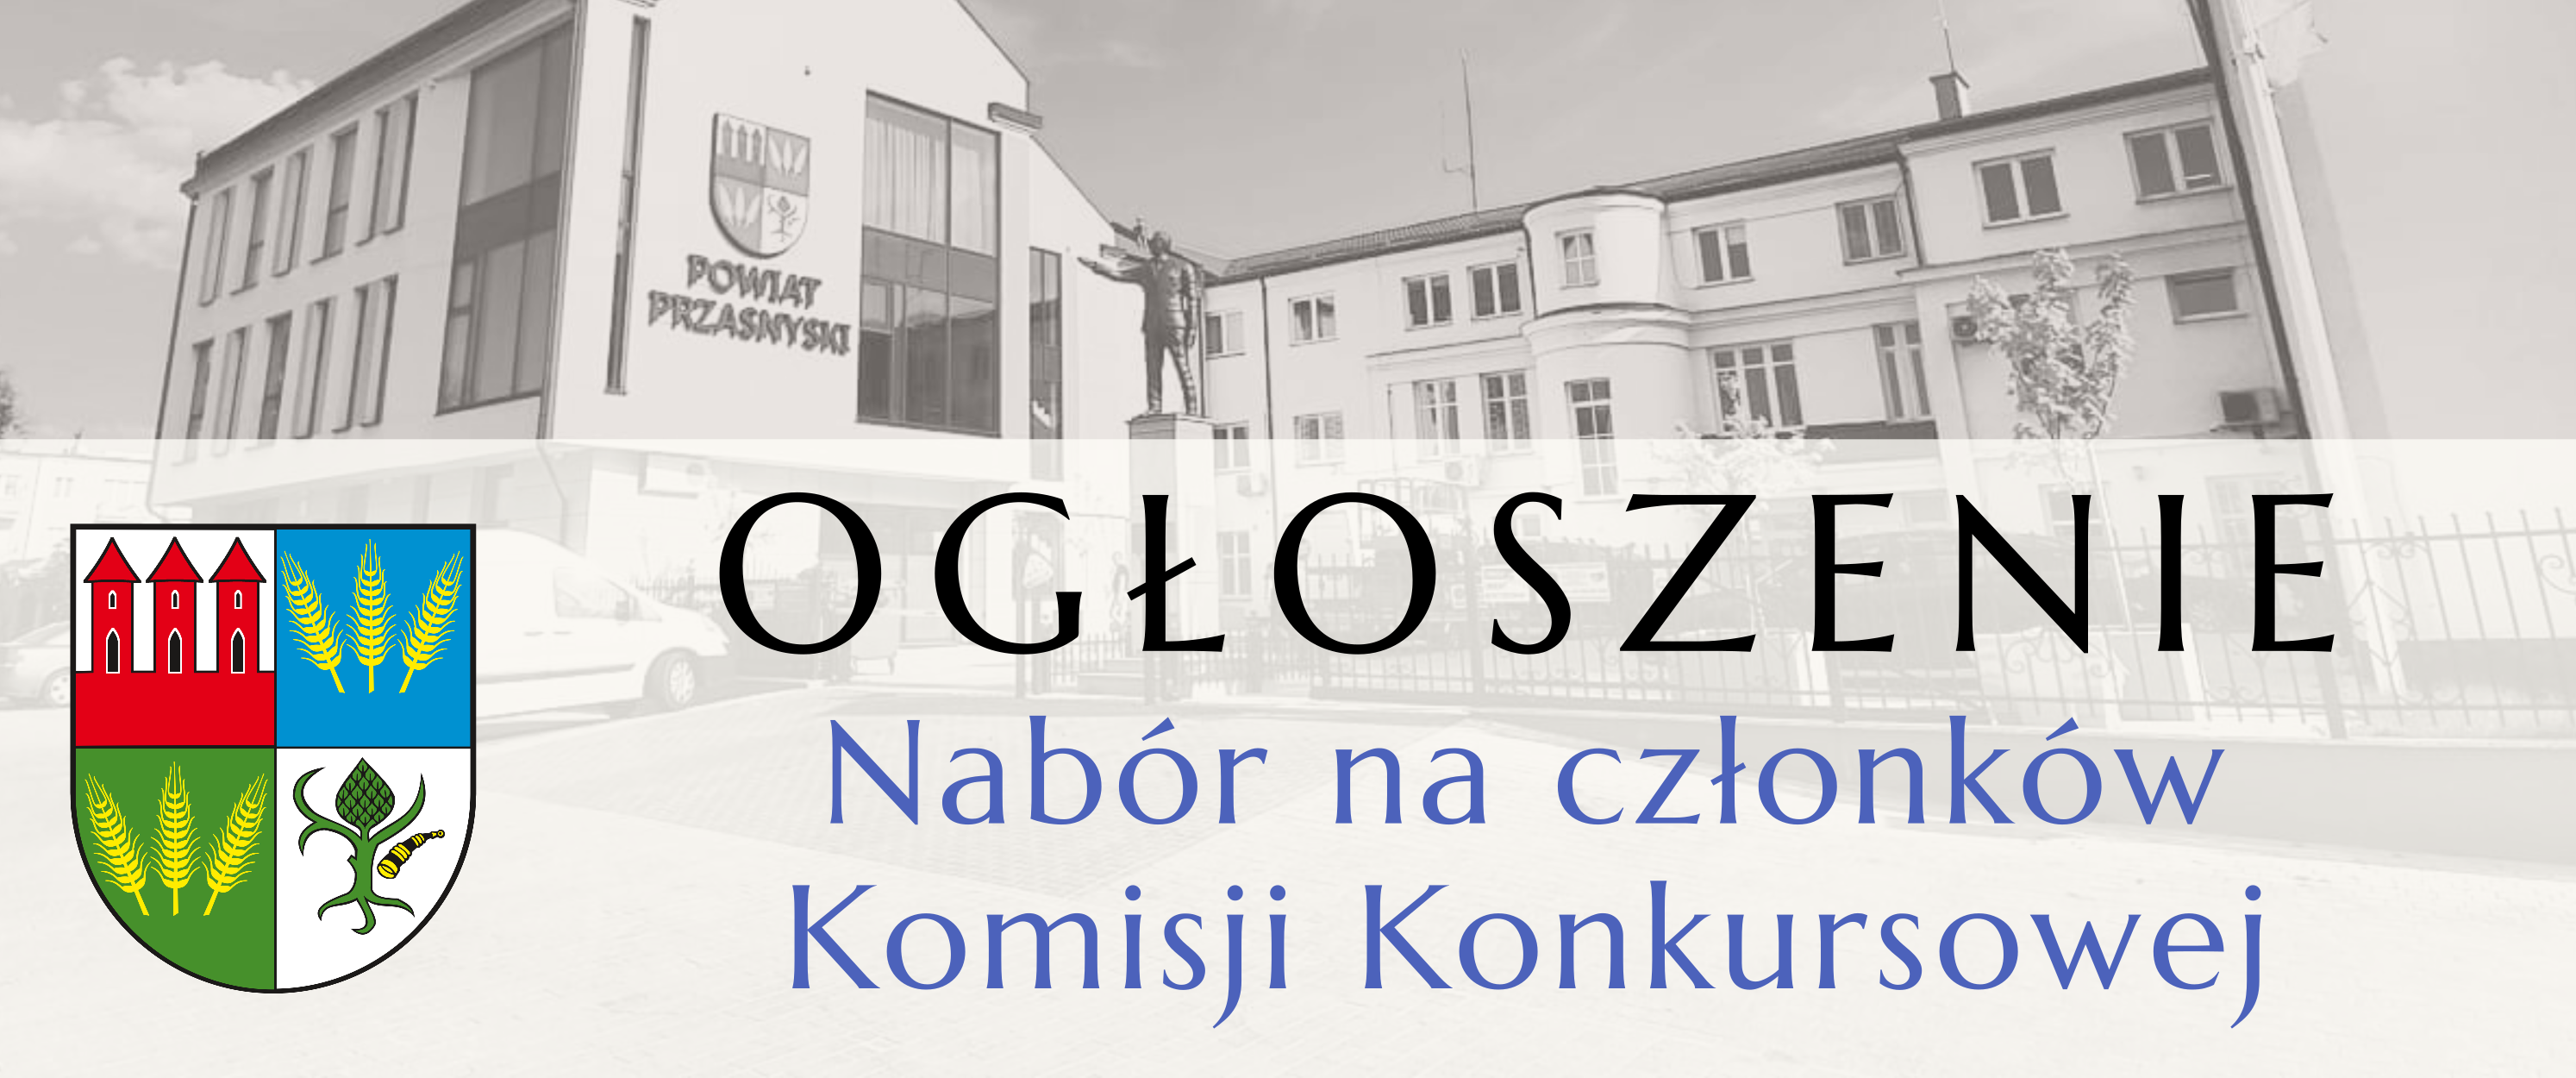 Grafika ogłoszenie z herbem Powiatu Przasnyskiego, nabór do komisji konkursowej.